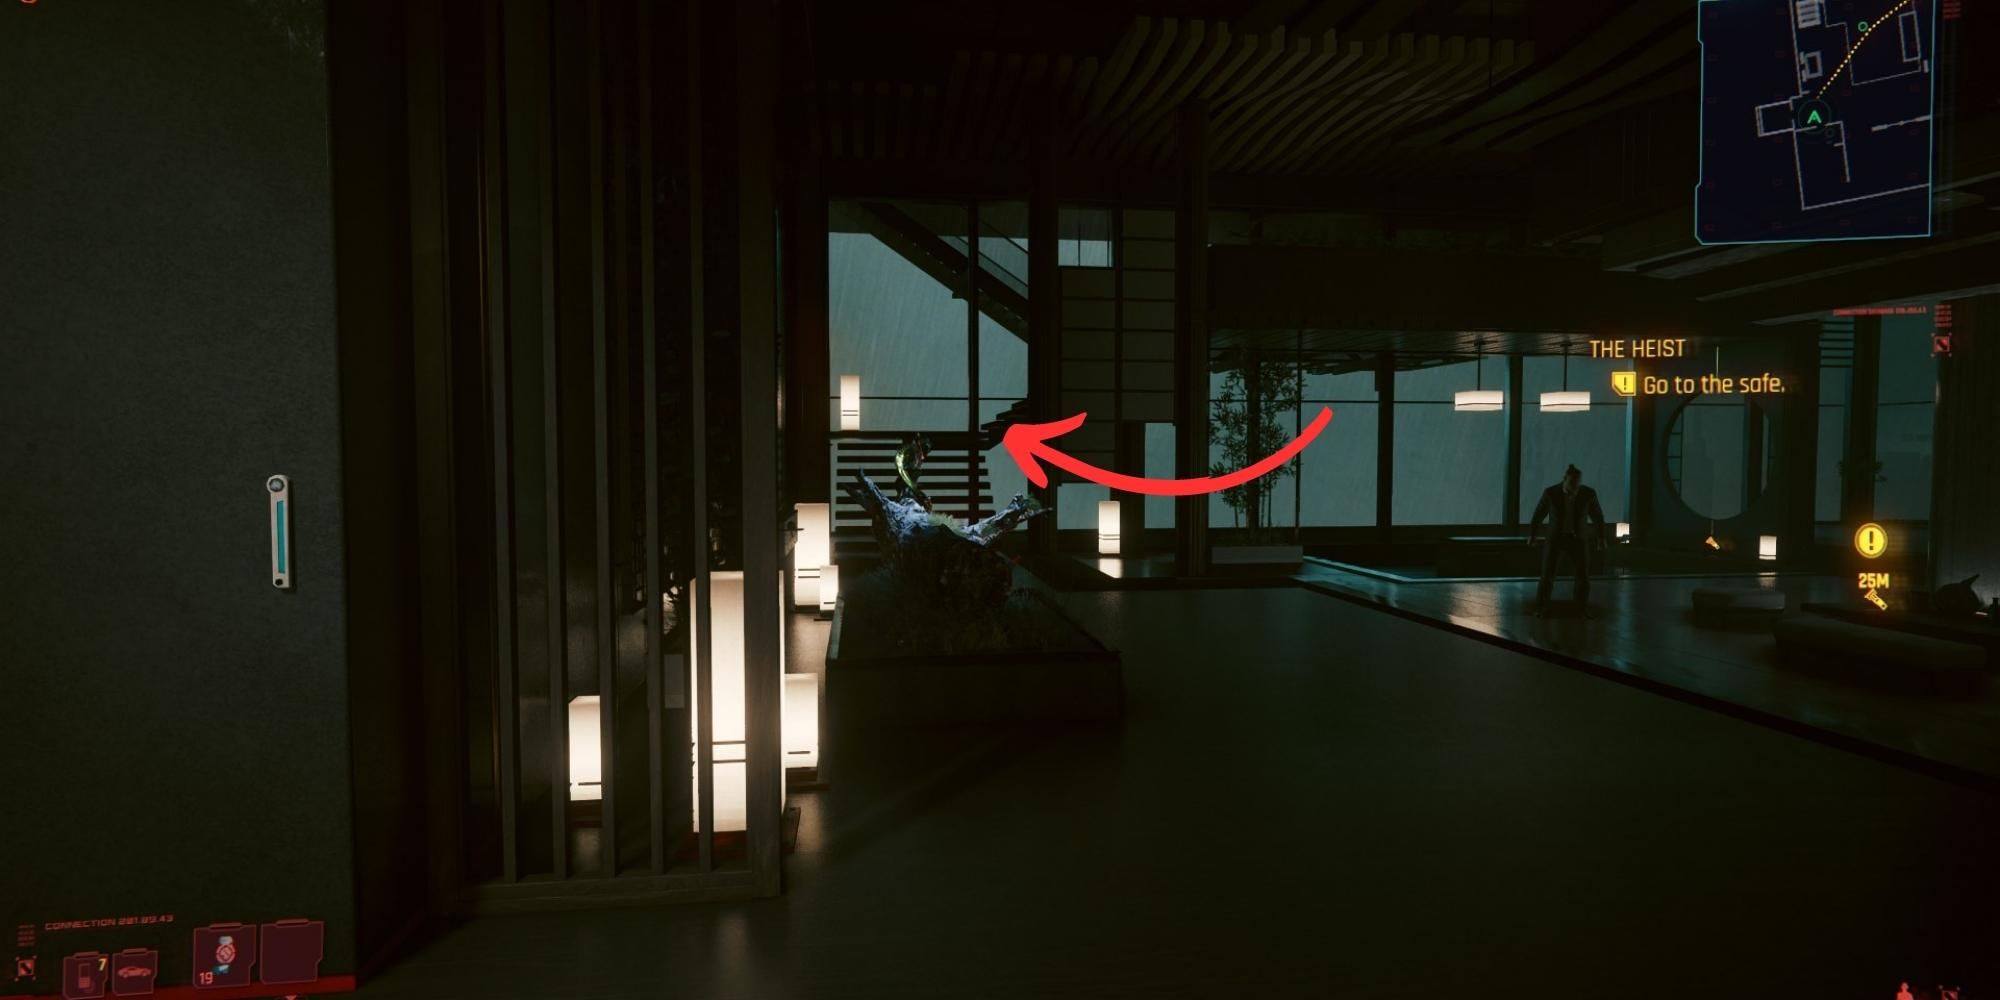 La habitación de Yorinobu Arasaka en Cyberpunk 2077 con una flecha apuntando hacia las escaleras que conducen al techo.